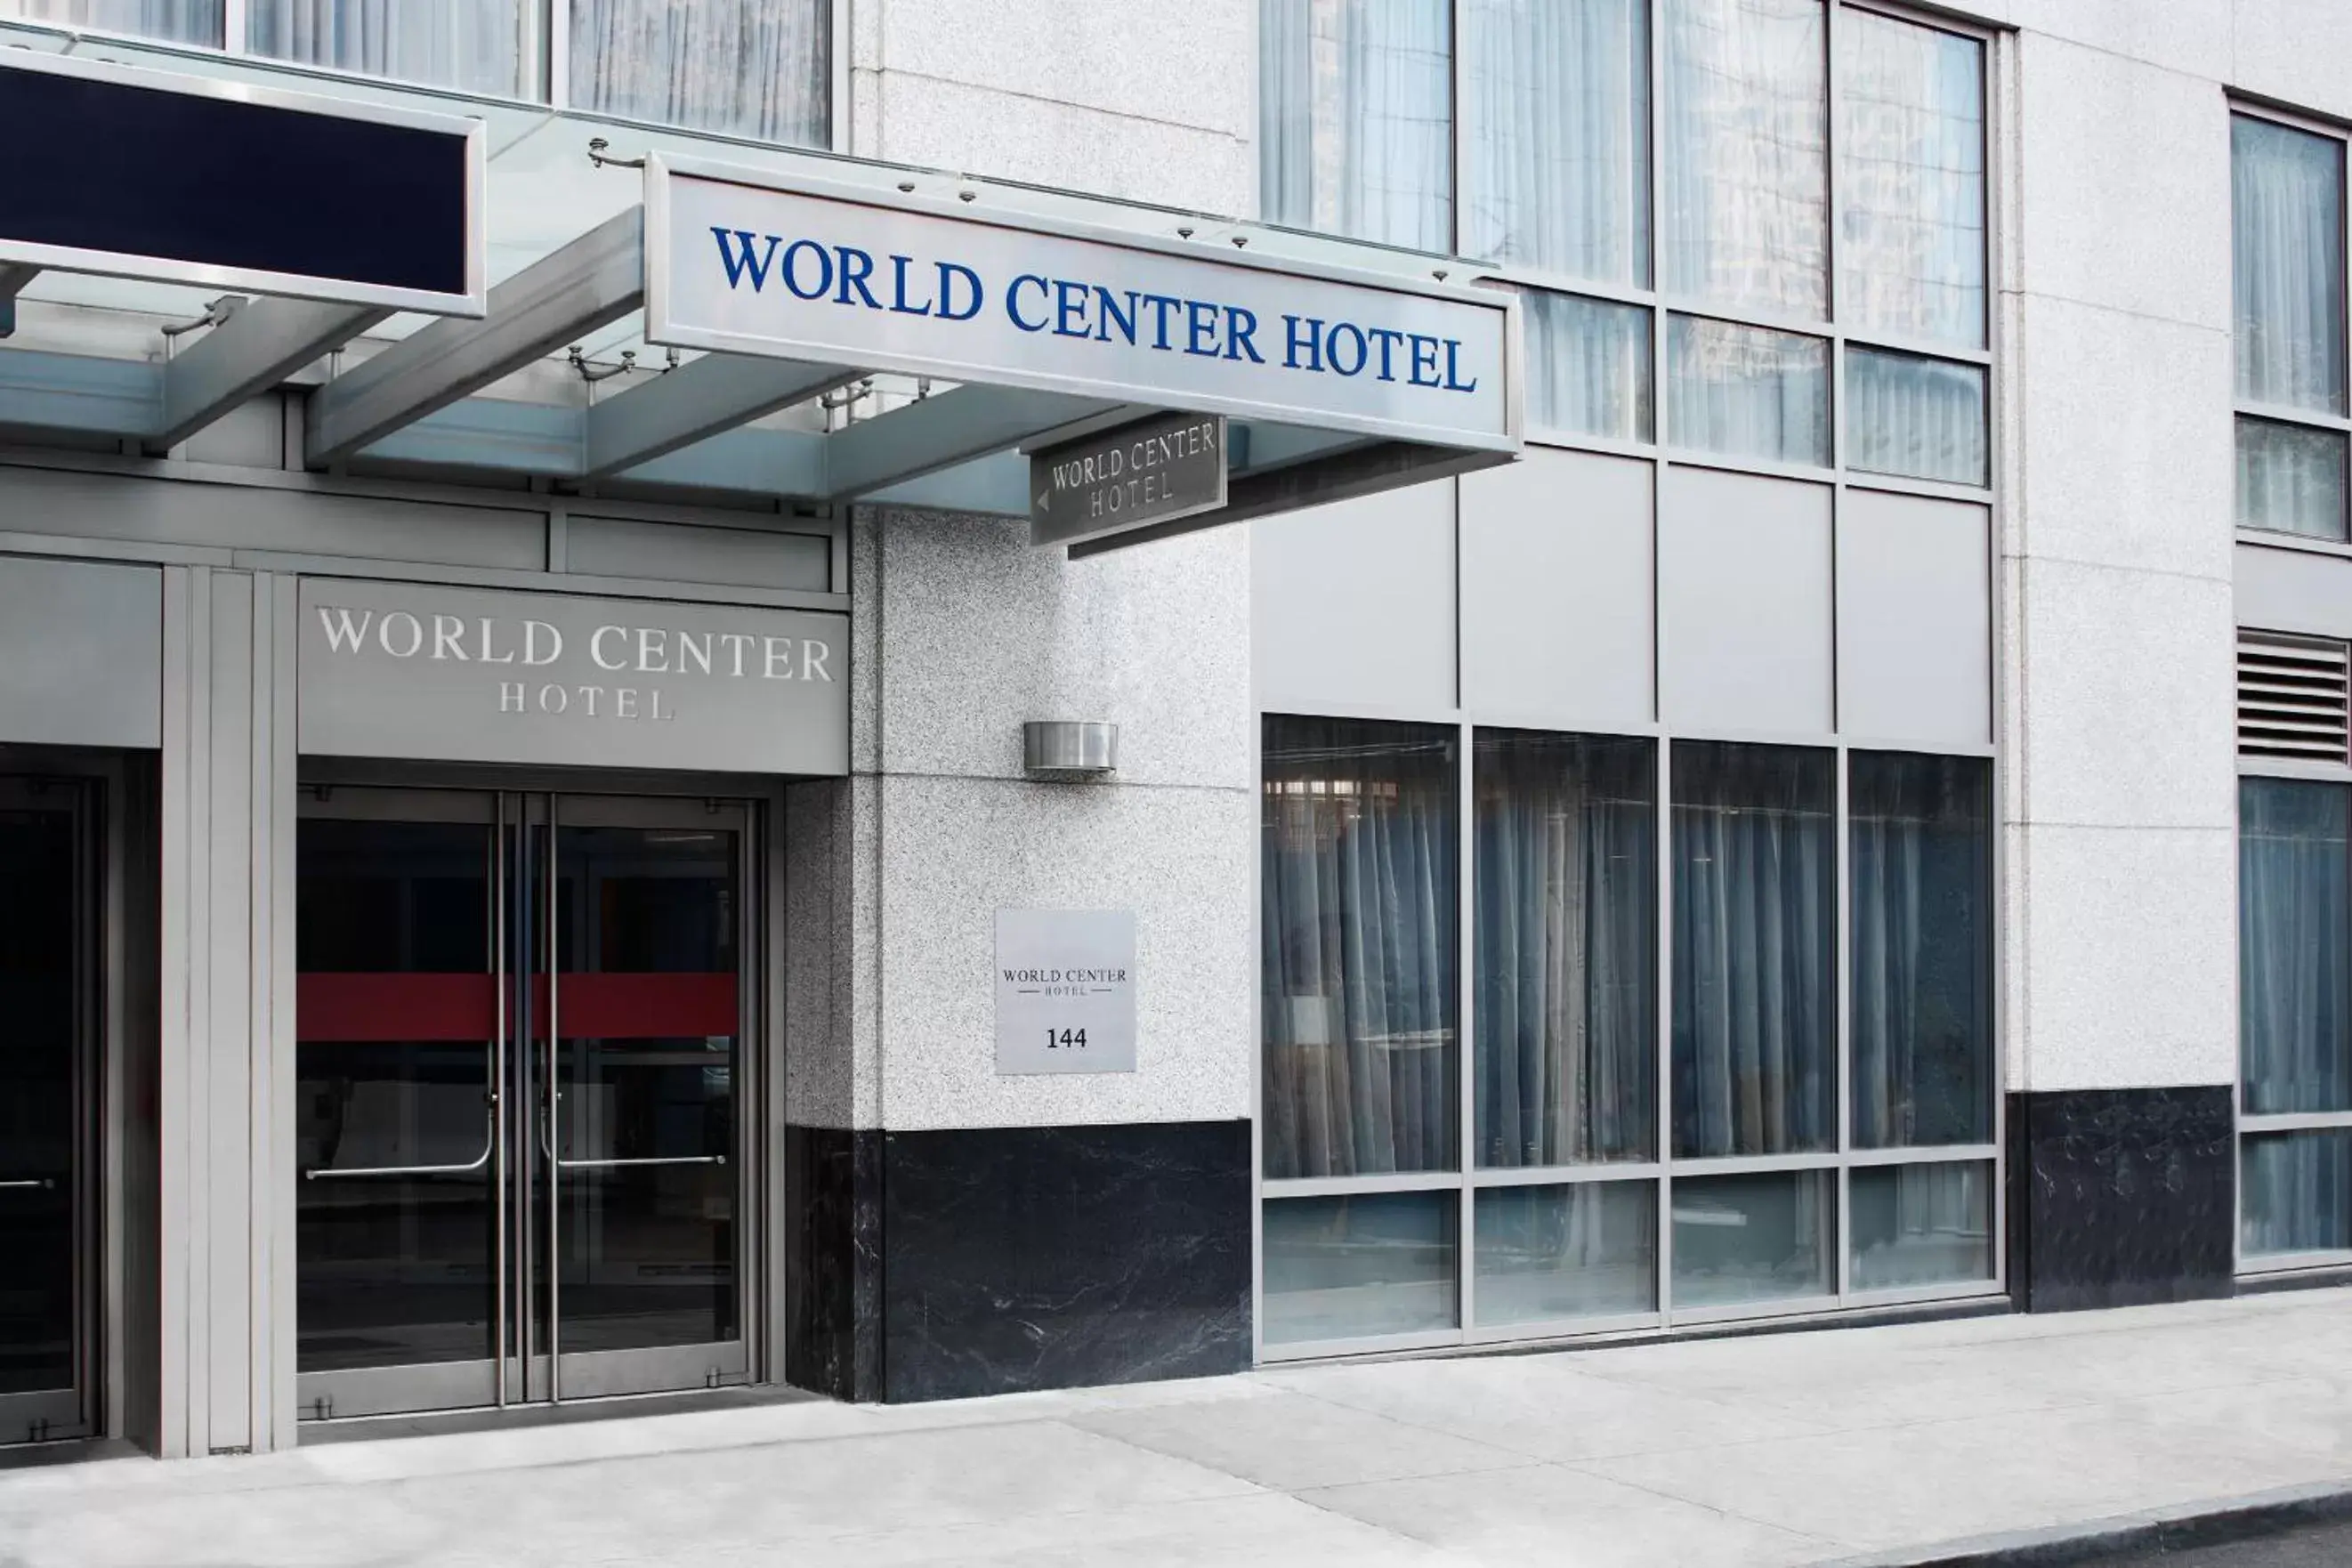 Facade/Entrance in World Center Hotel